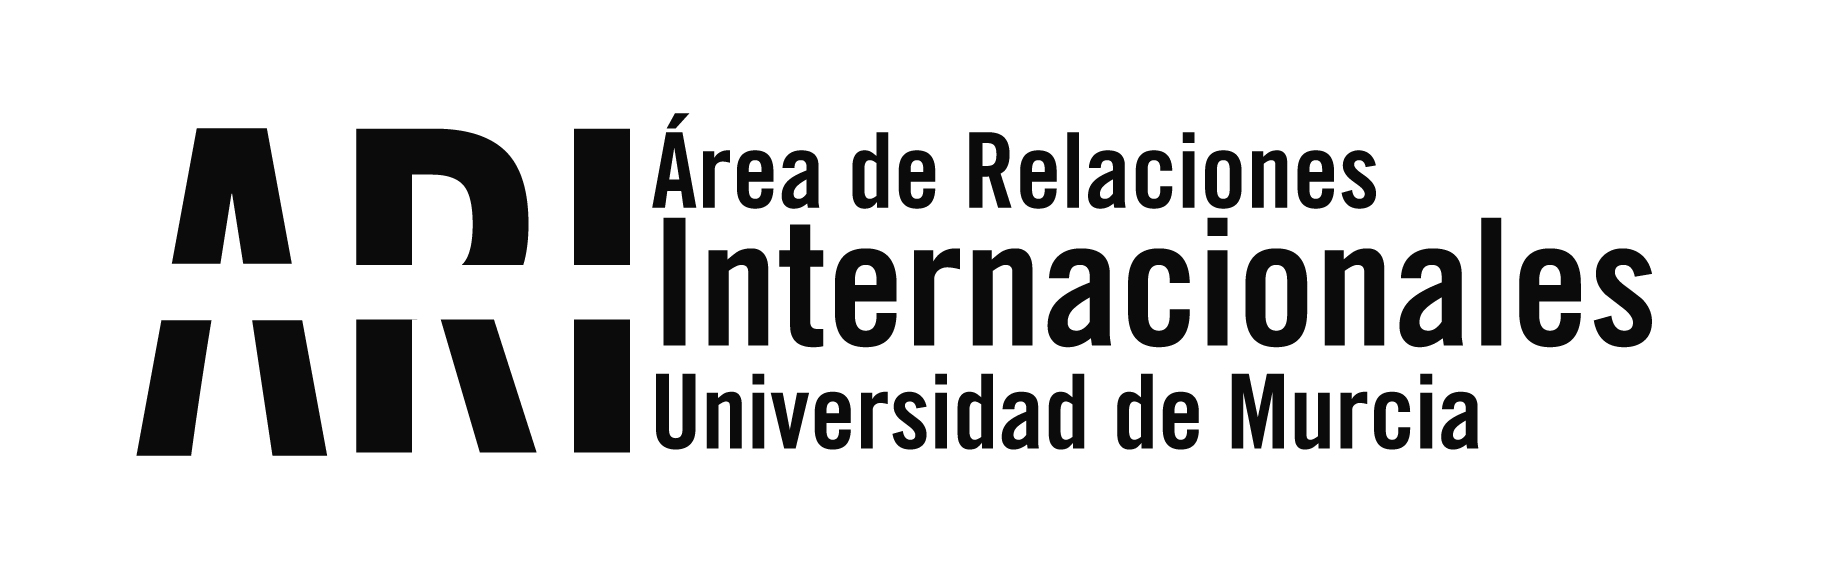 Convocatoria Abierta para proyectos de investigación de la Fundación EU-LAC - Área de Relaciones Internacionales